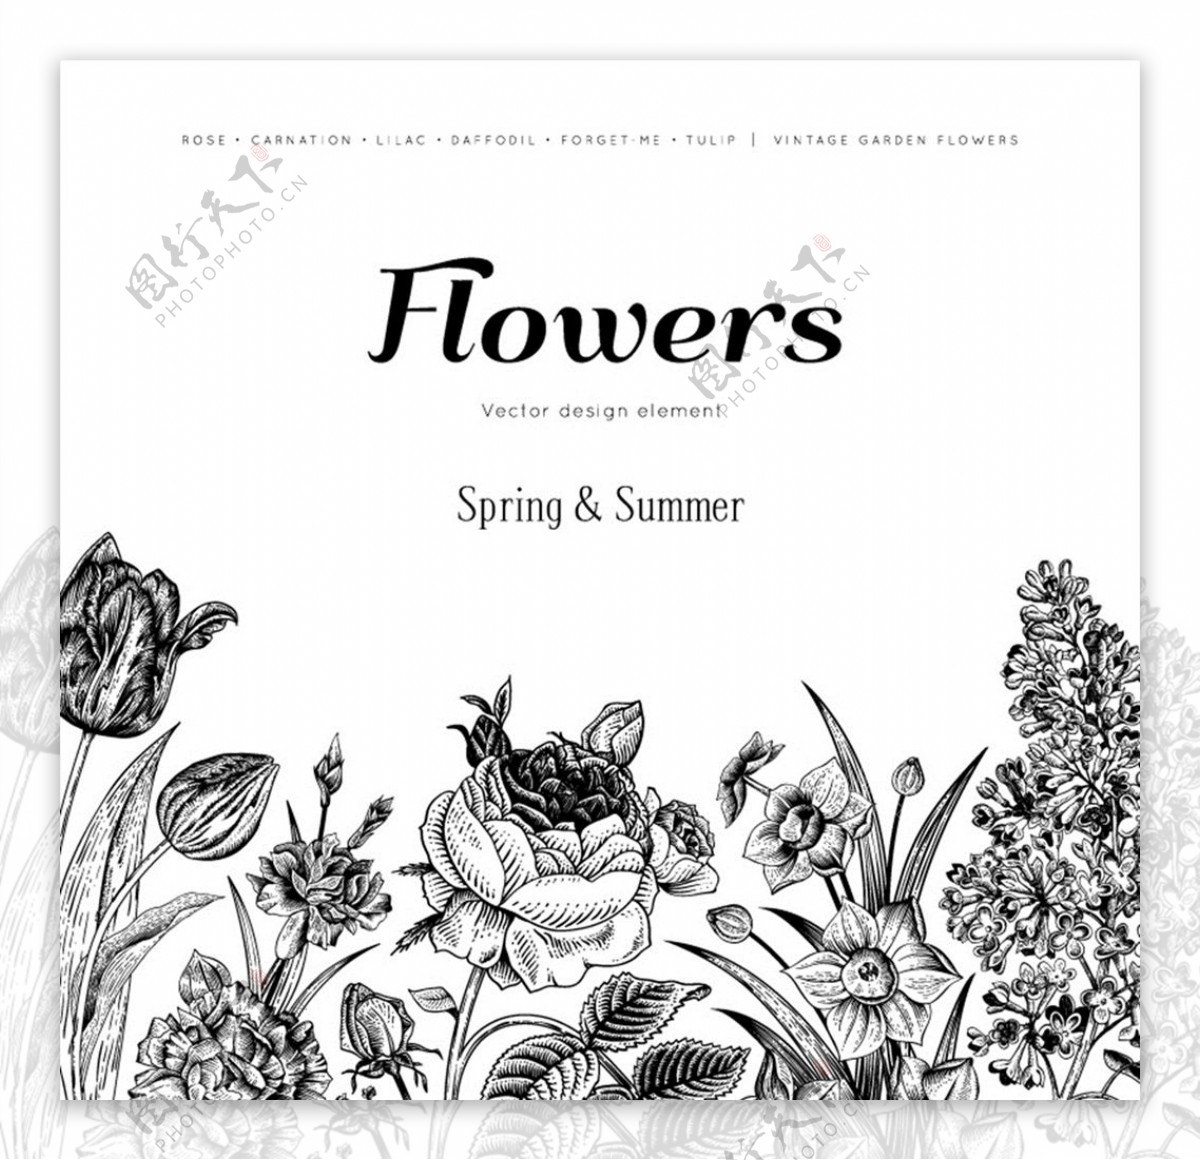 手绘花卉背景图片